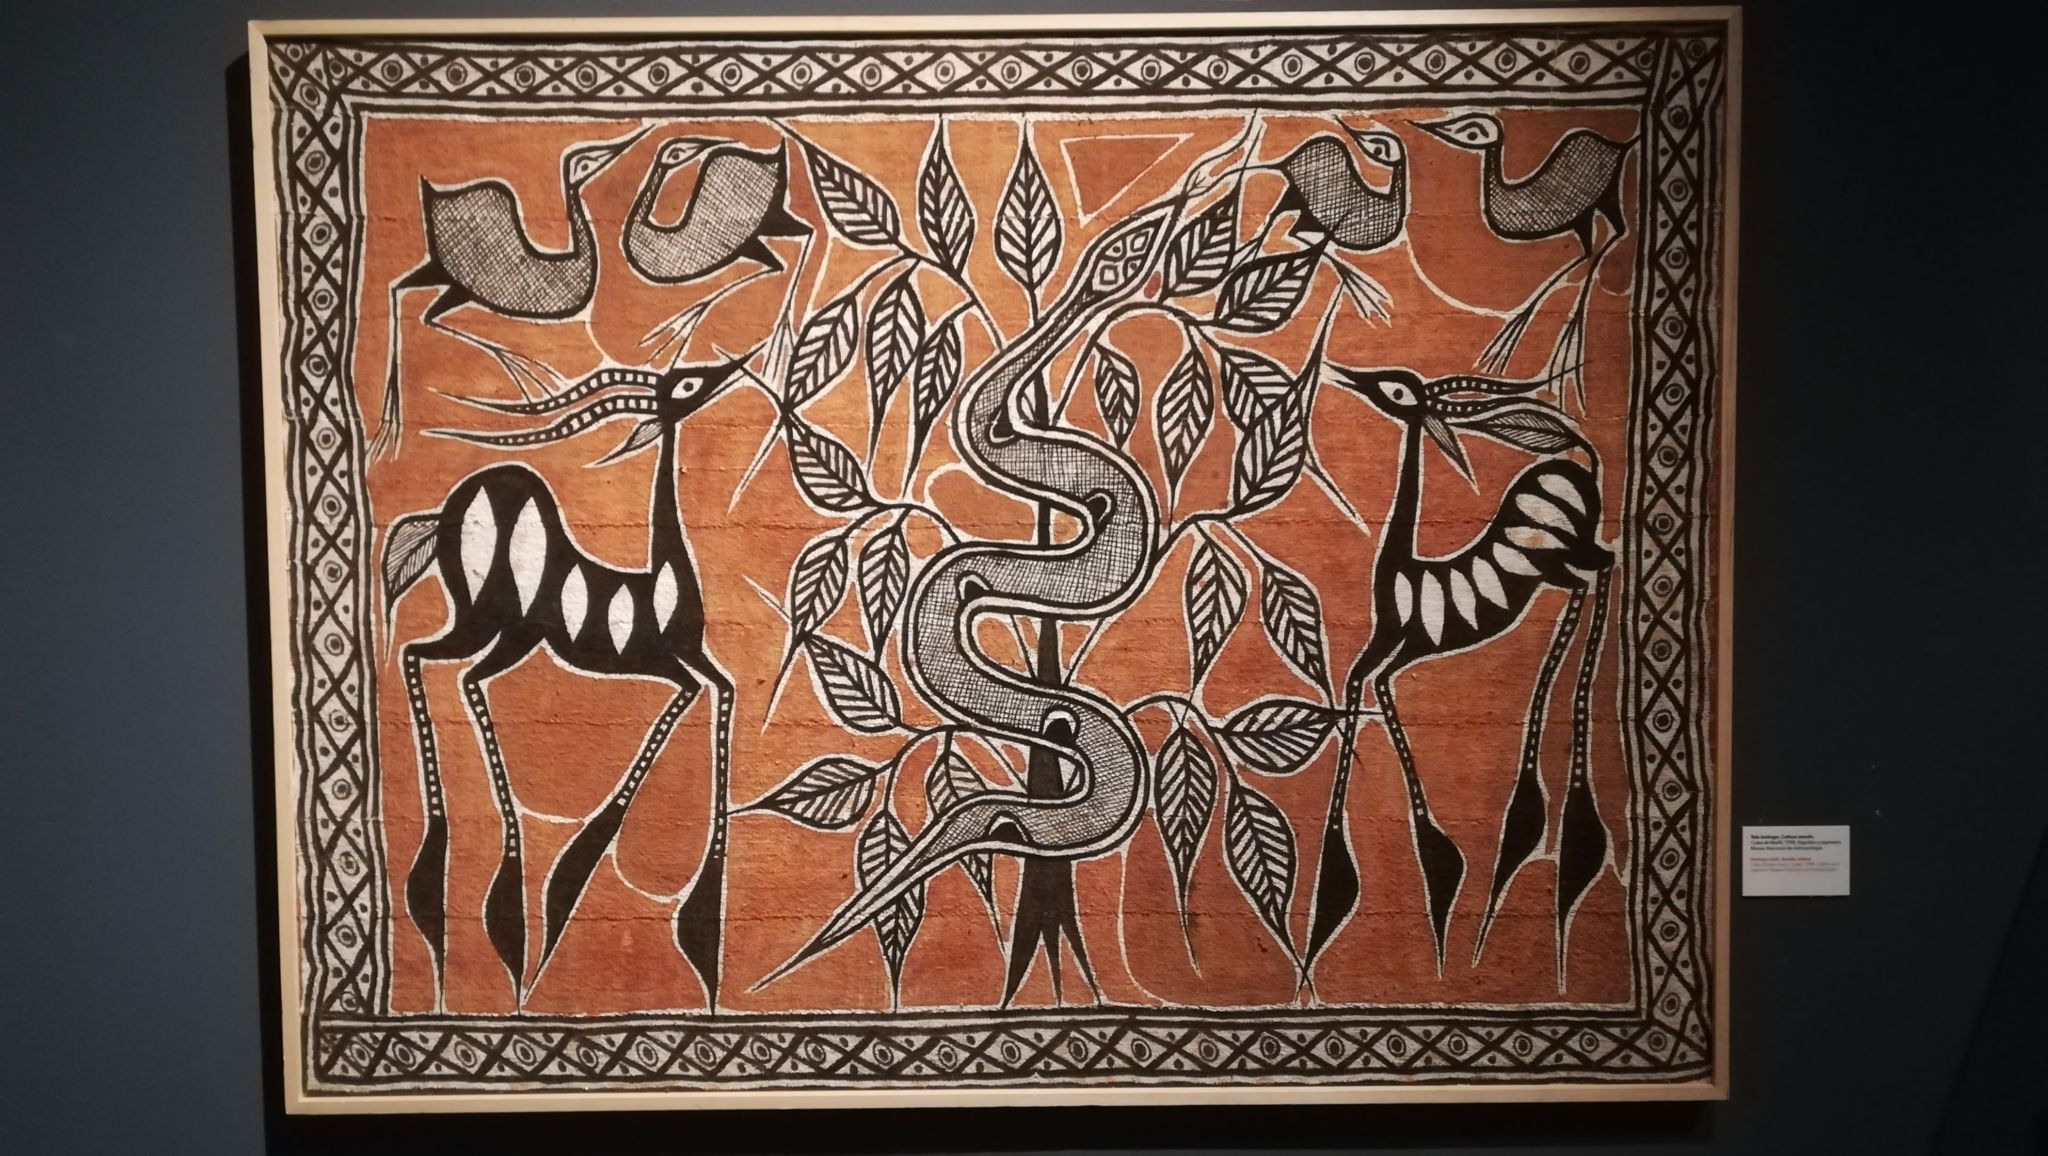 Tela korhogo de la cultura senufo expuesta en “El lenguaje de las telas” del Museo Nacional de Antropología.